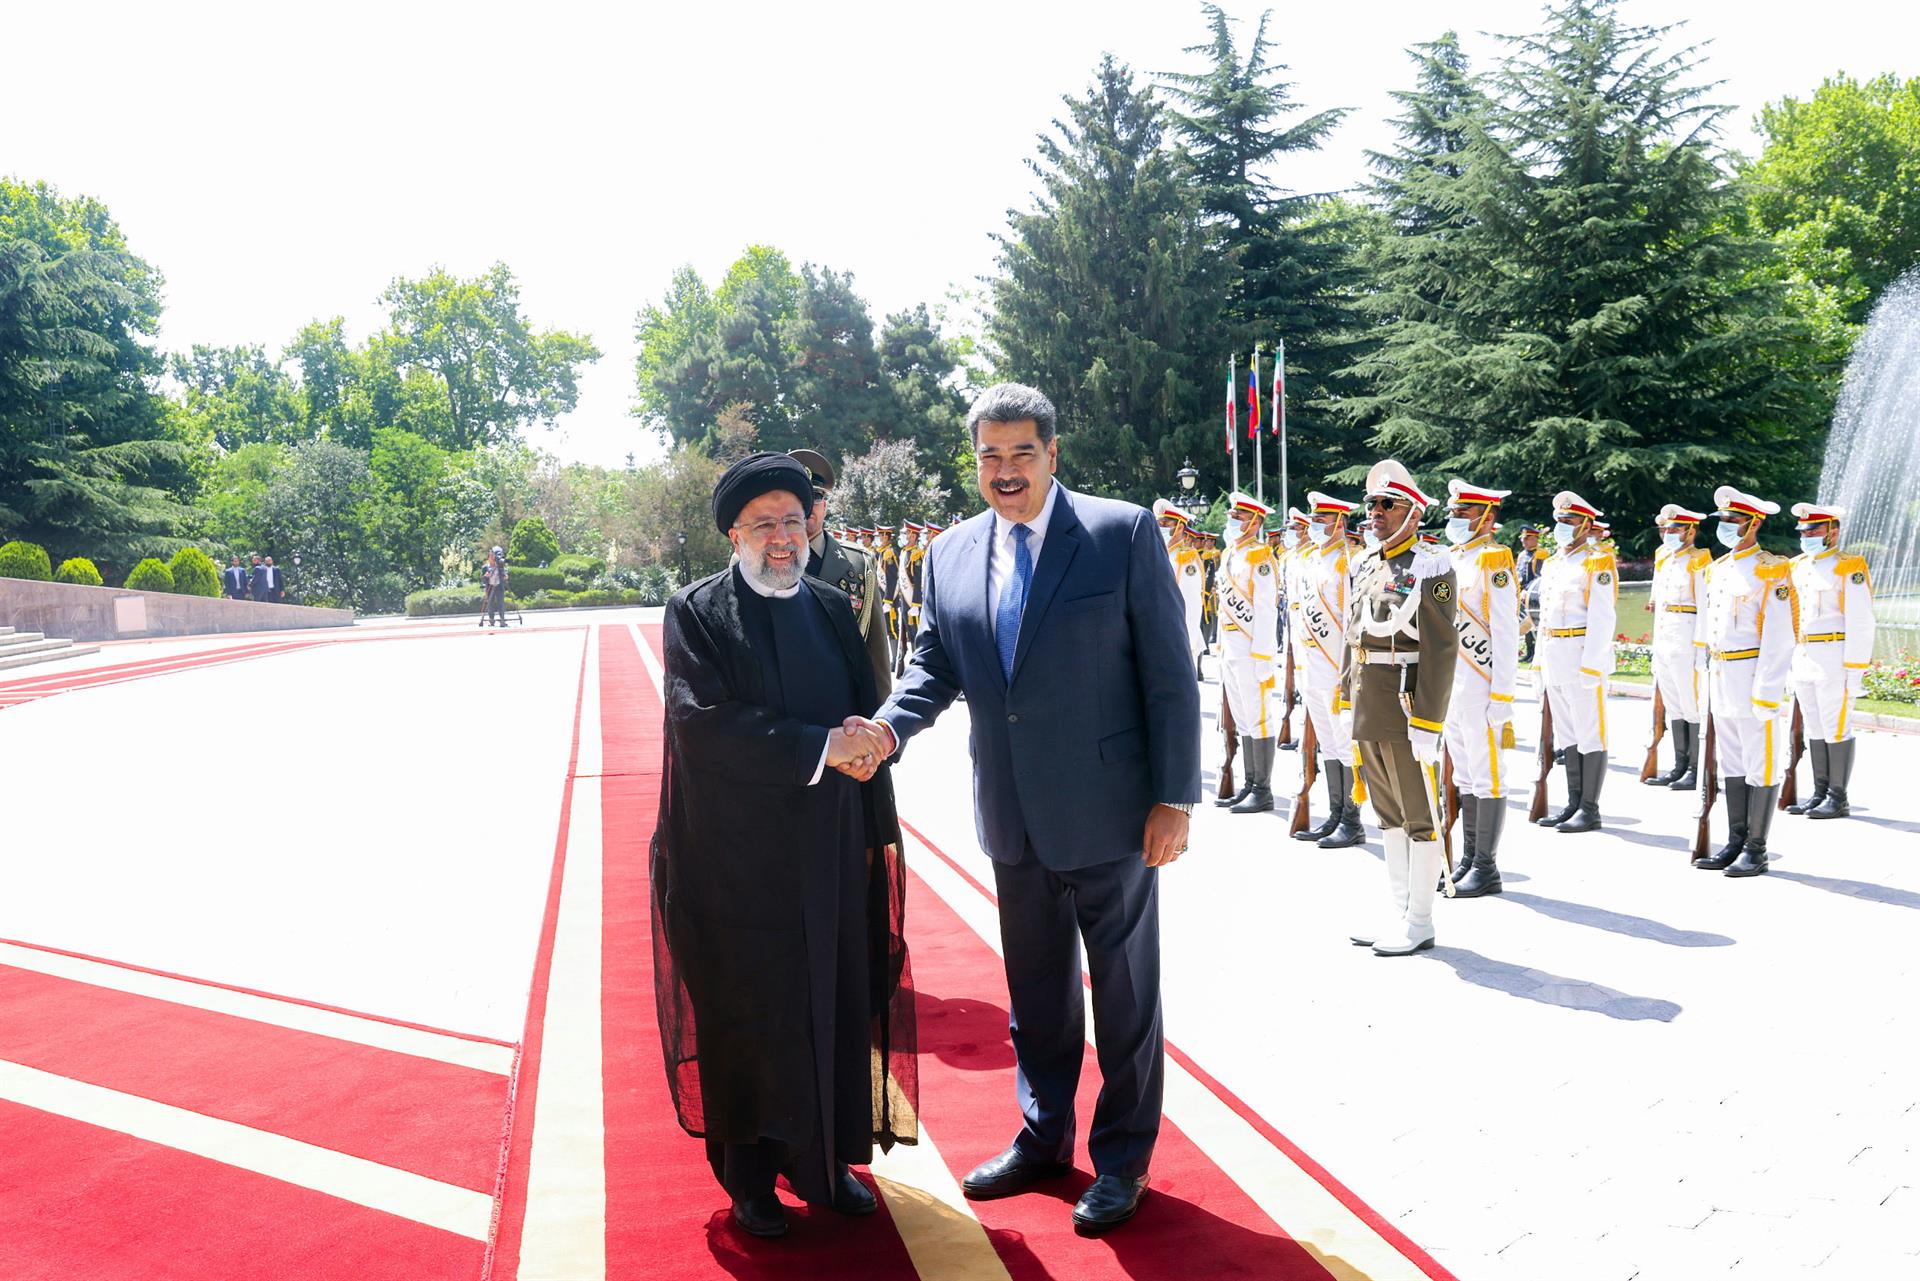 El régimen de Nicolás Maduro firmó un acuerdo de cooperación de 20 años con el régimen de Irán